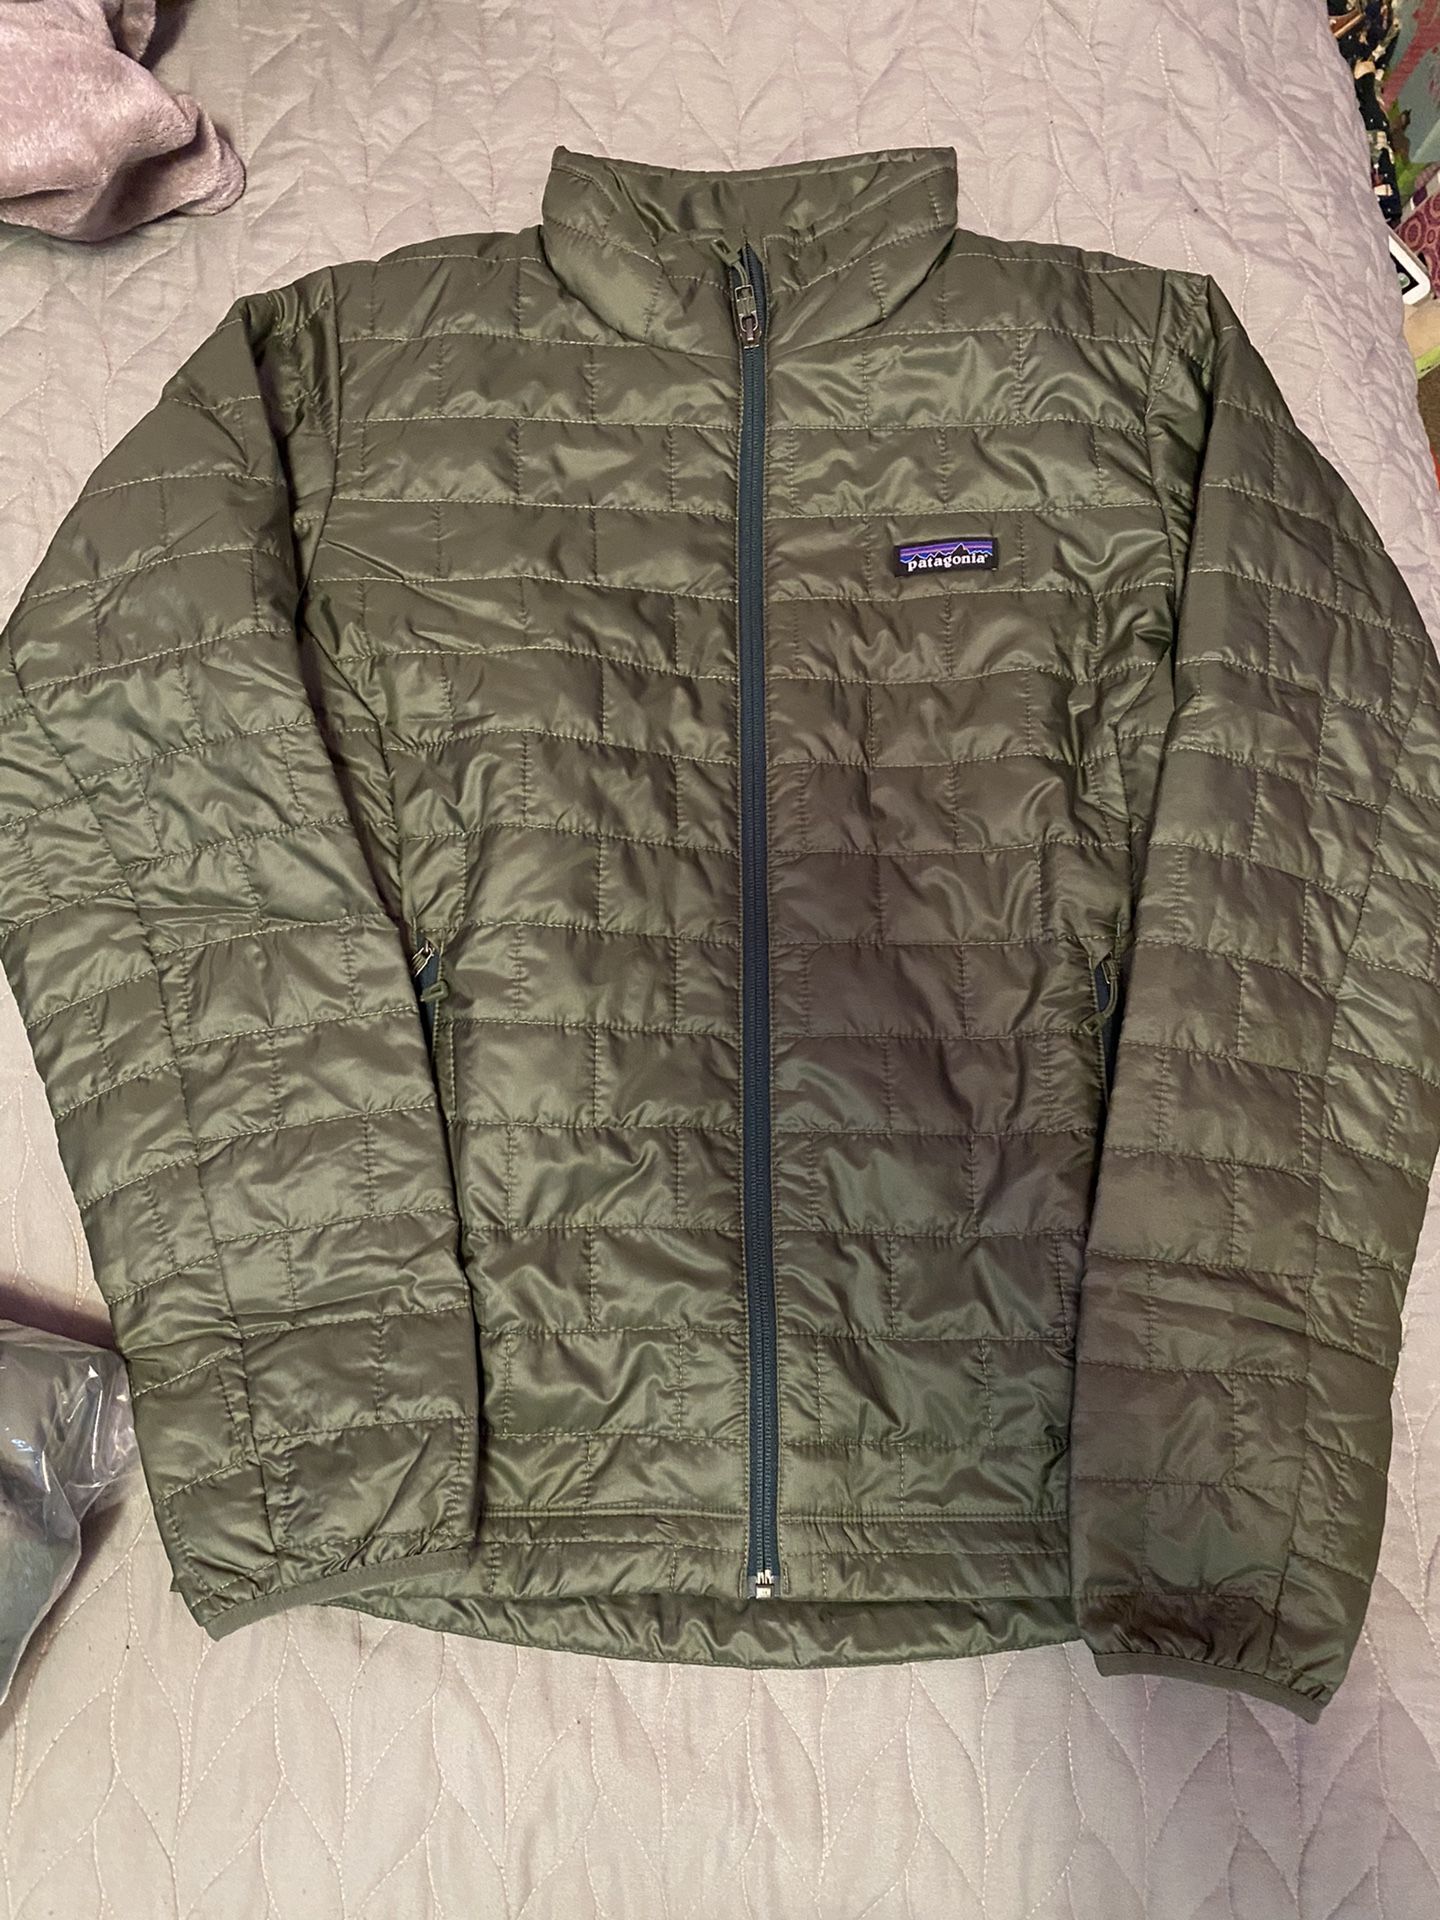 Men’s Patagonia jacket